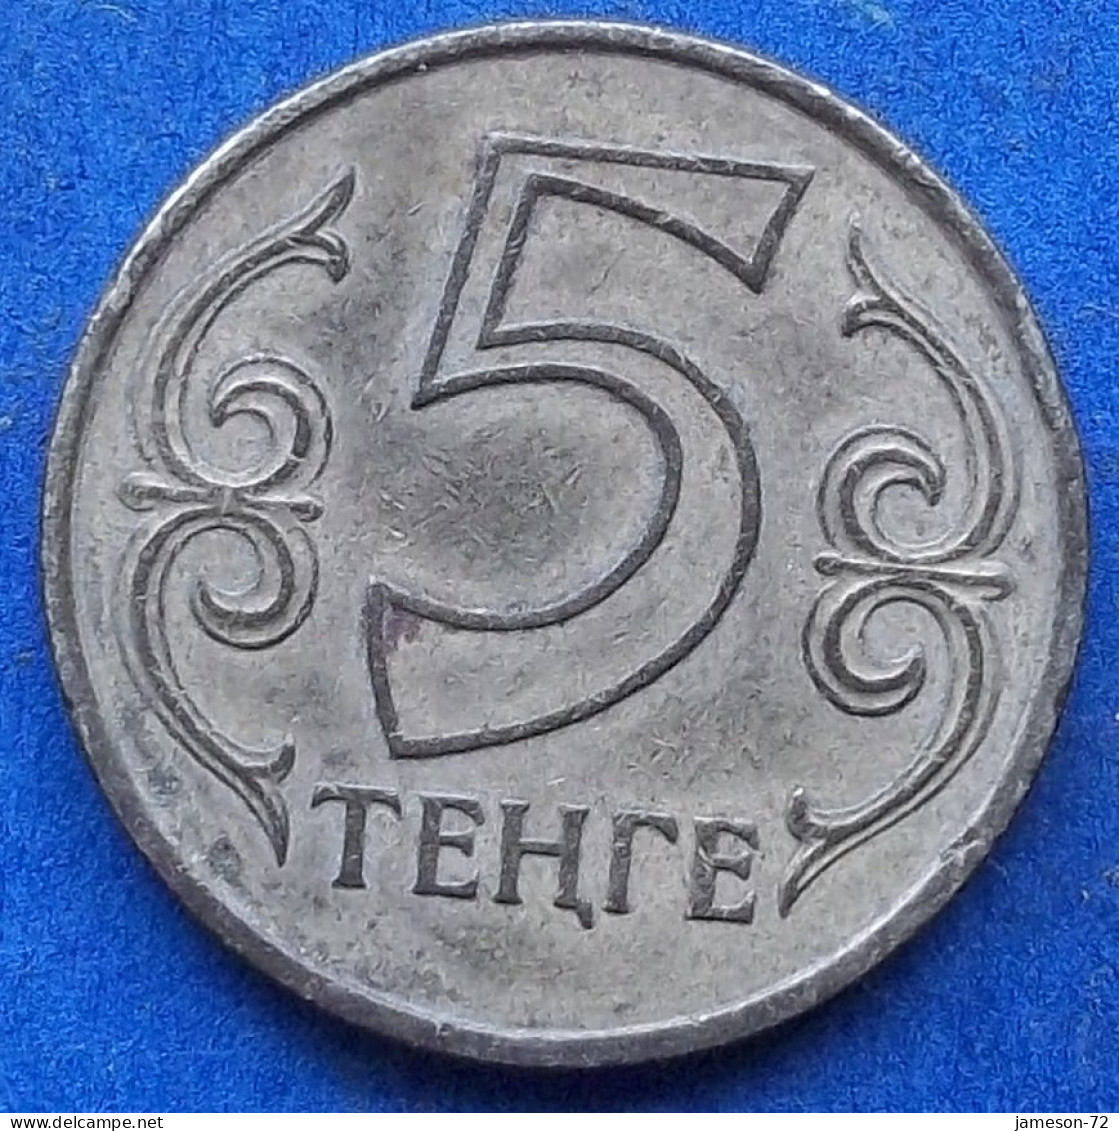 KAZAKHSTAN - 5 Tenge 2004 KM# 24 Independent Republic (1991) - Edelweiss Coins - Kazakhstan